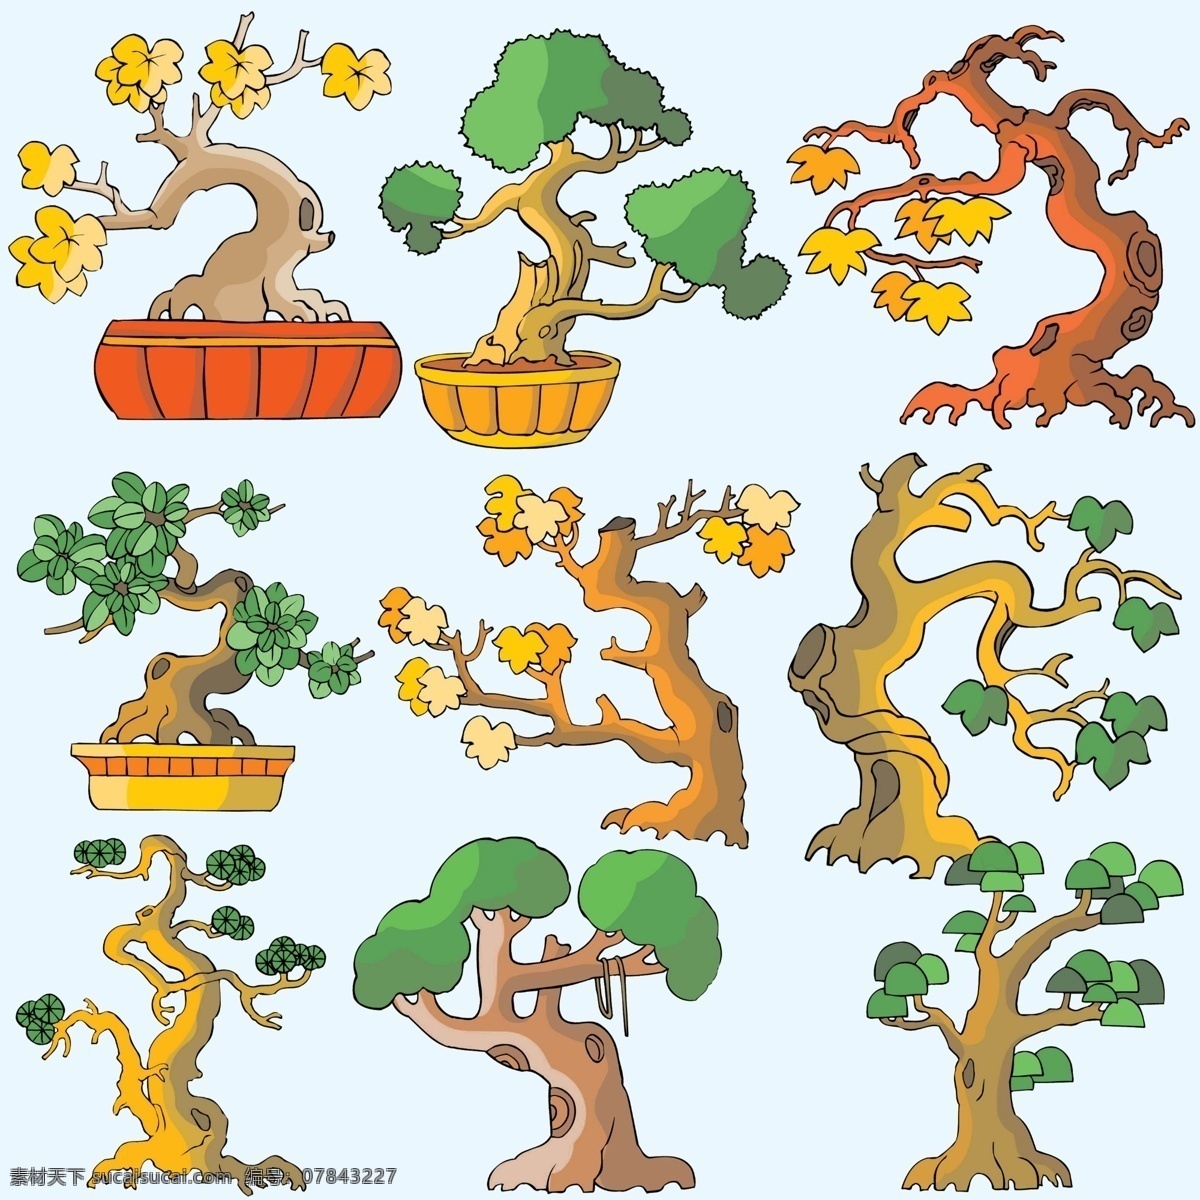 手绘树木 手绘素材 手绘 卡通素材 卡通树木 创意造型 创意树木 创意盆栽 插画配图 卡通配图 白色